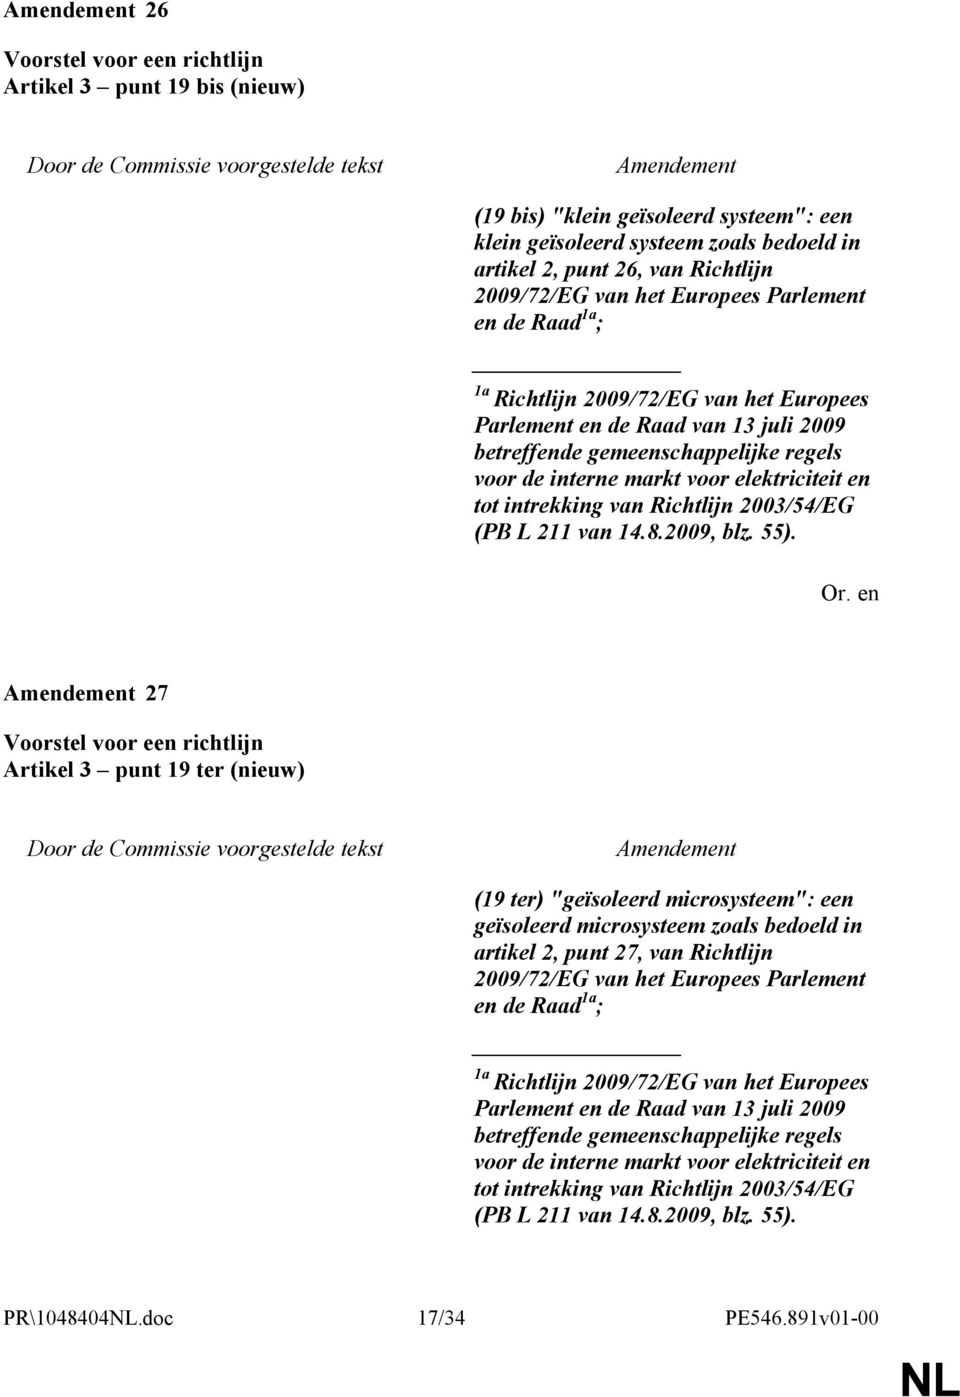 2003/54/EG (PB L 211 van 14.8.2009, blz. 55).